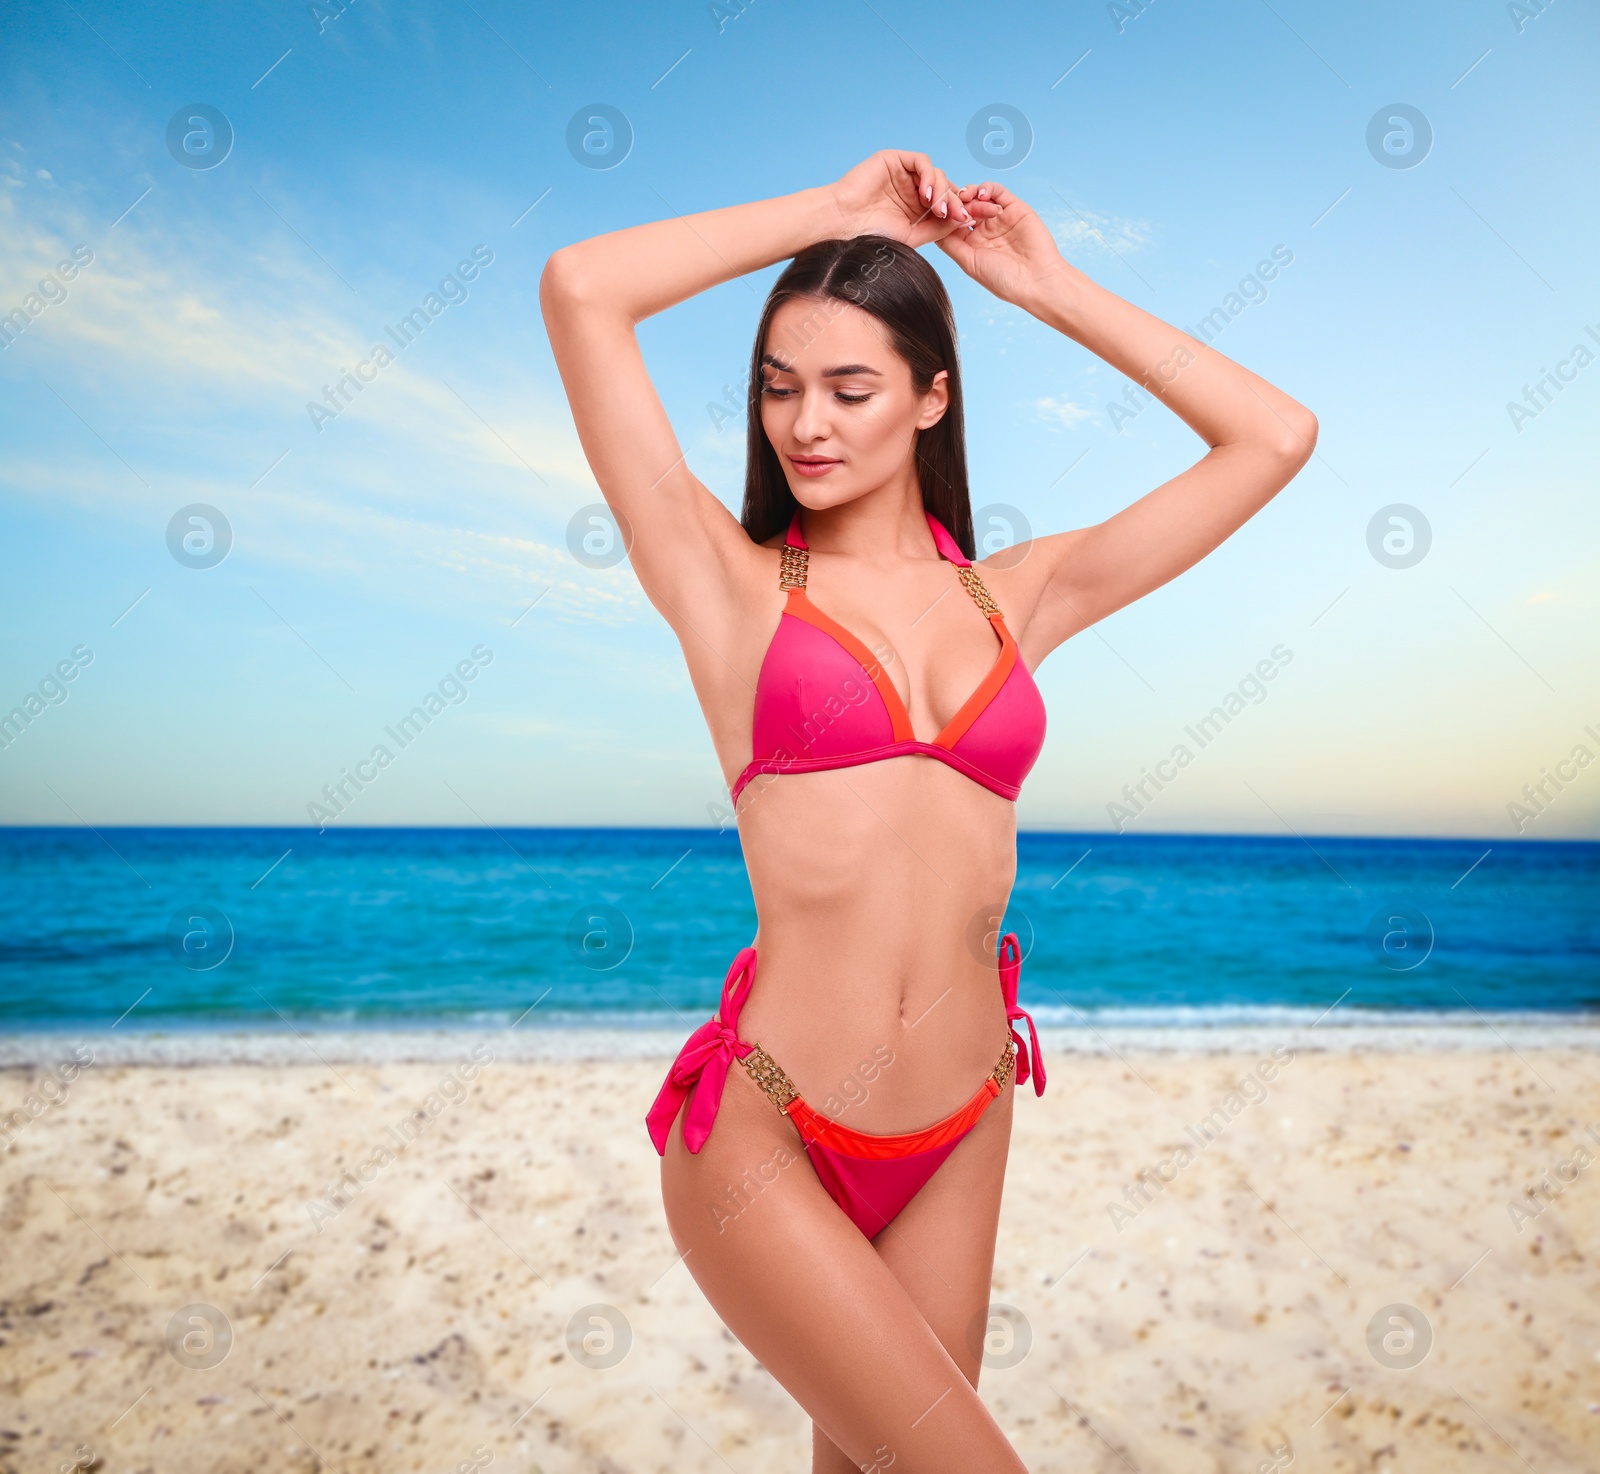 Image of Beautiful woman in stylish pink bikini on sandy beach near sea